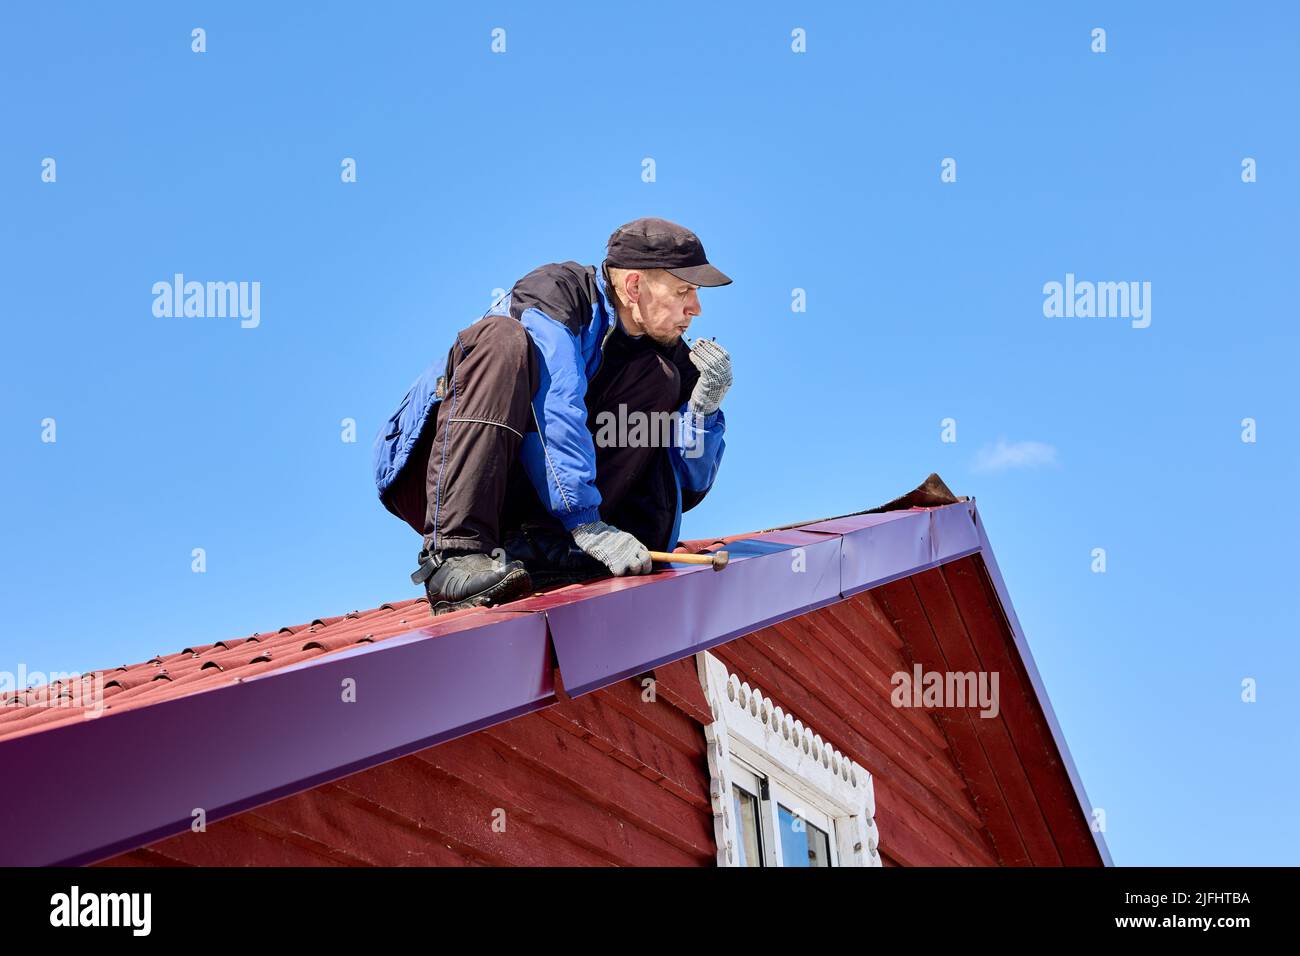 Clavando en el techo de hojalata Mientras techado, el trabajador usa un martillo para fijar el techo. Foto de stock